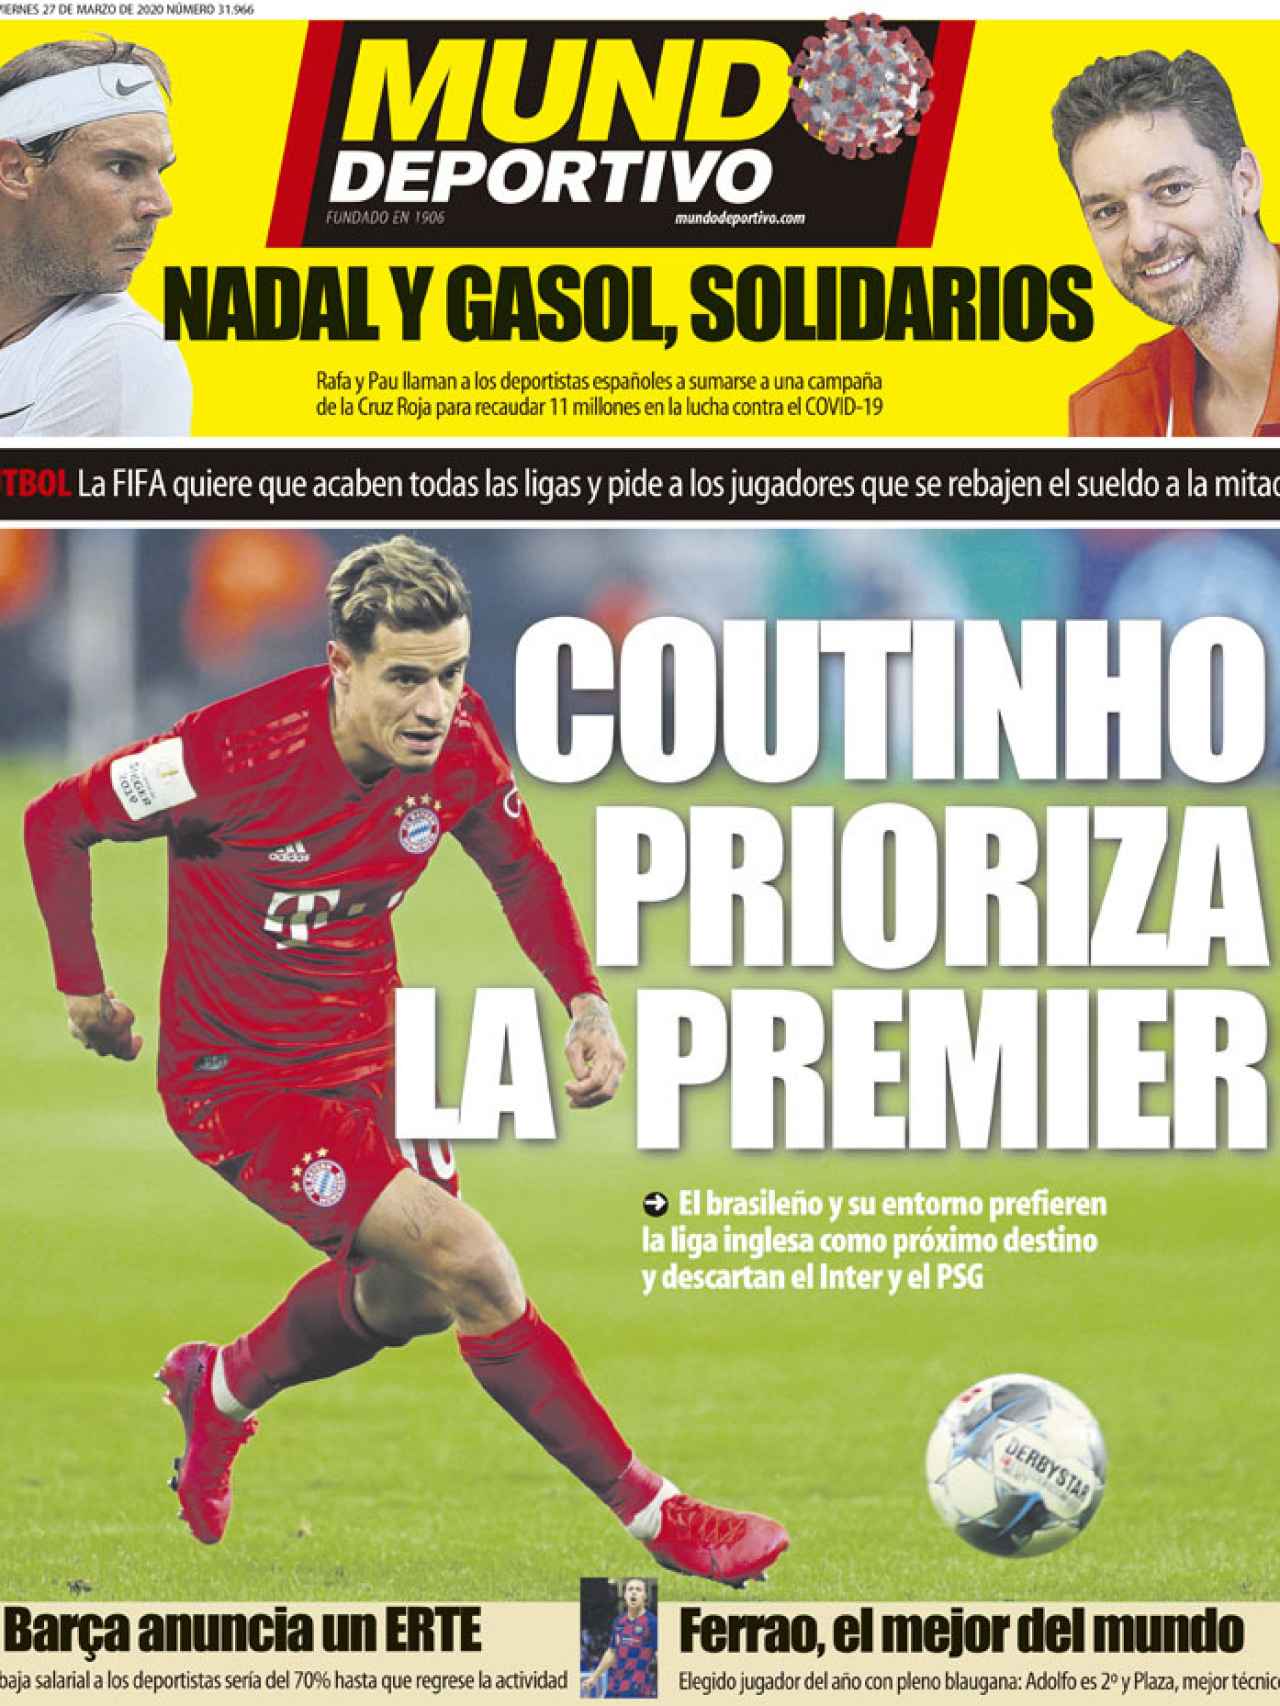 La portada del diario Mundo Deportivo (27/03/2020)